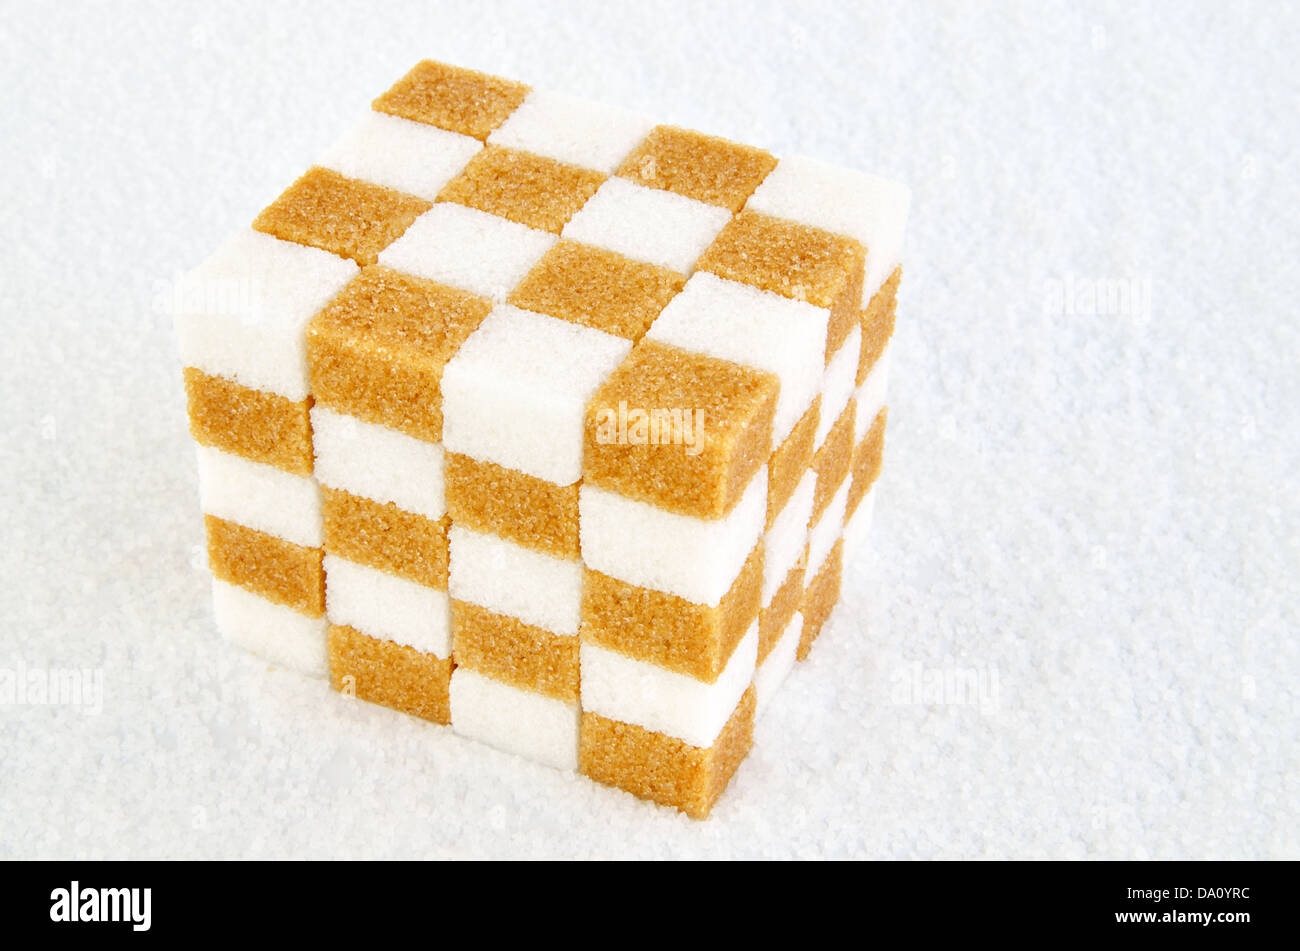 Cubo di marrone e bianco cubetti di zucchero Foto Stock